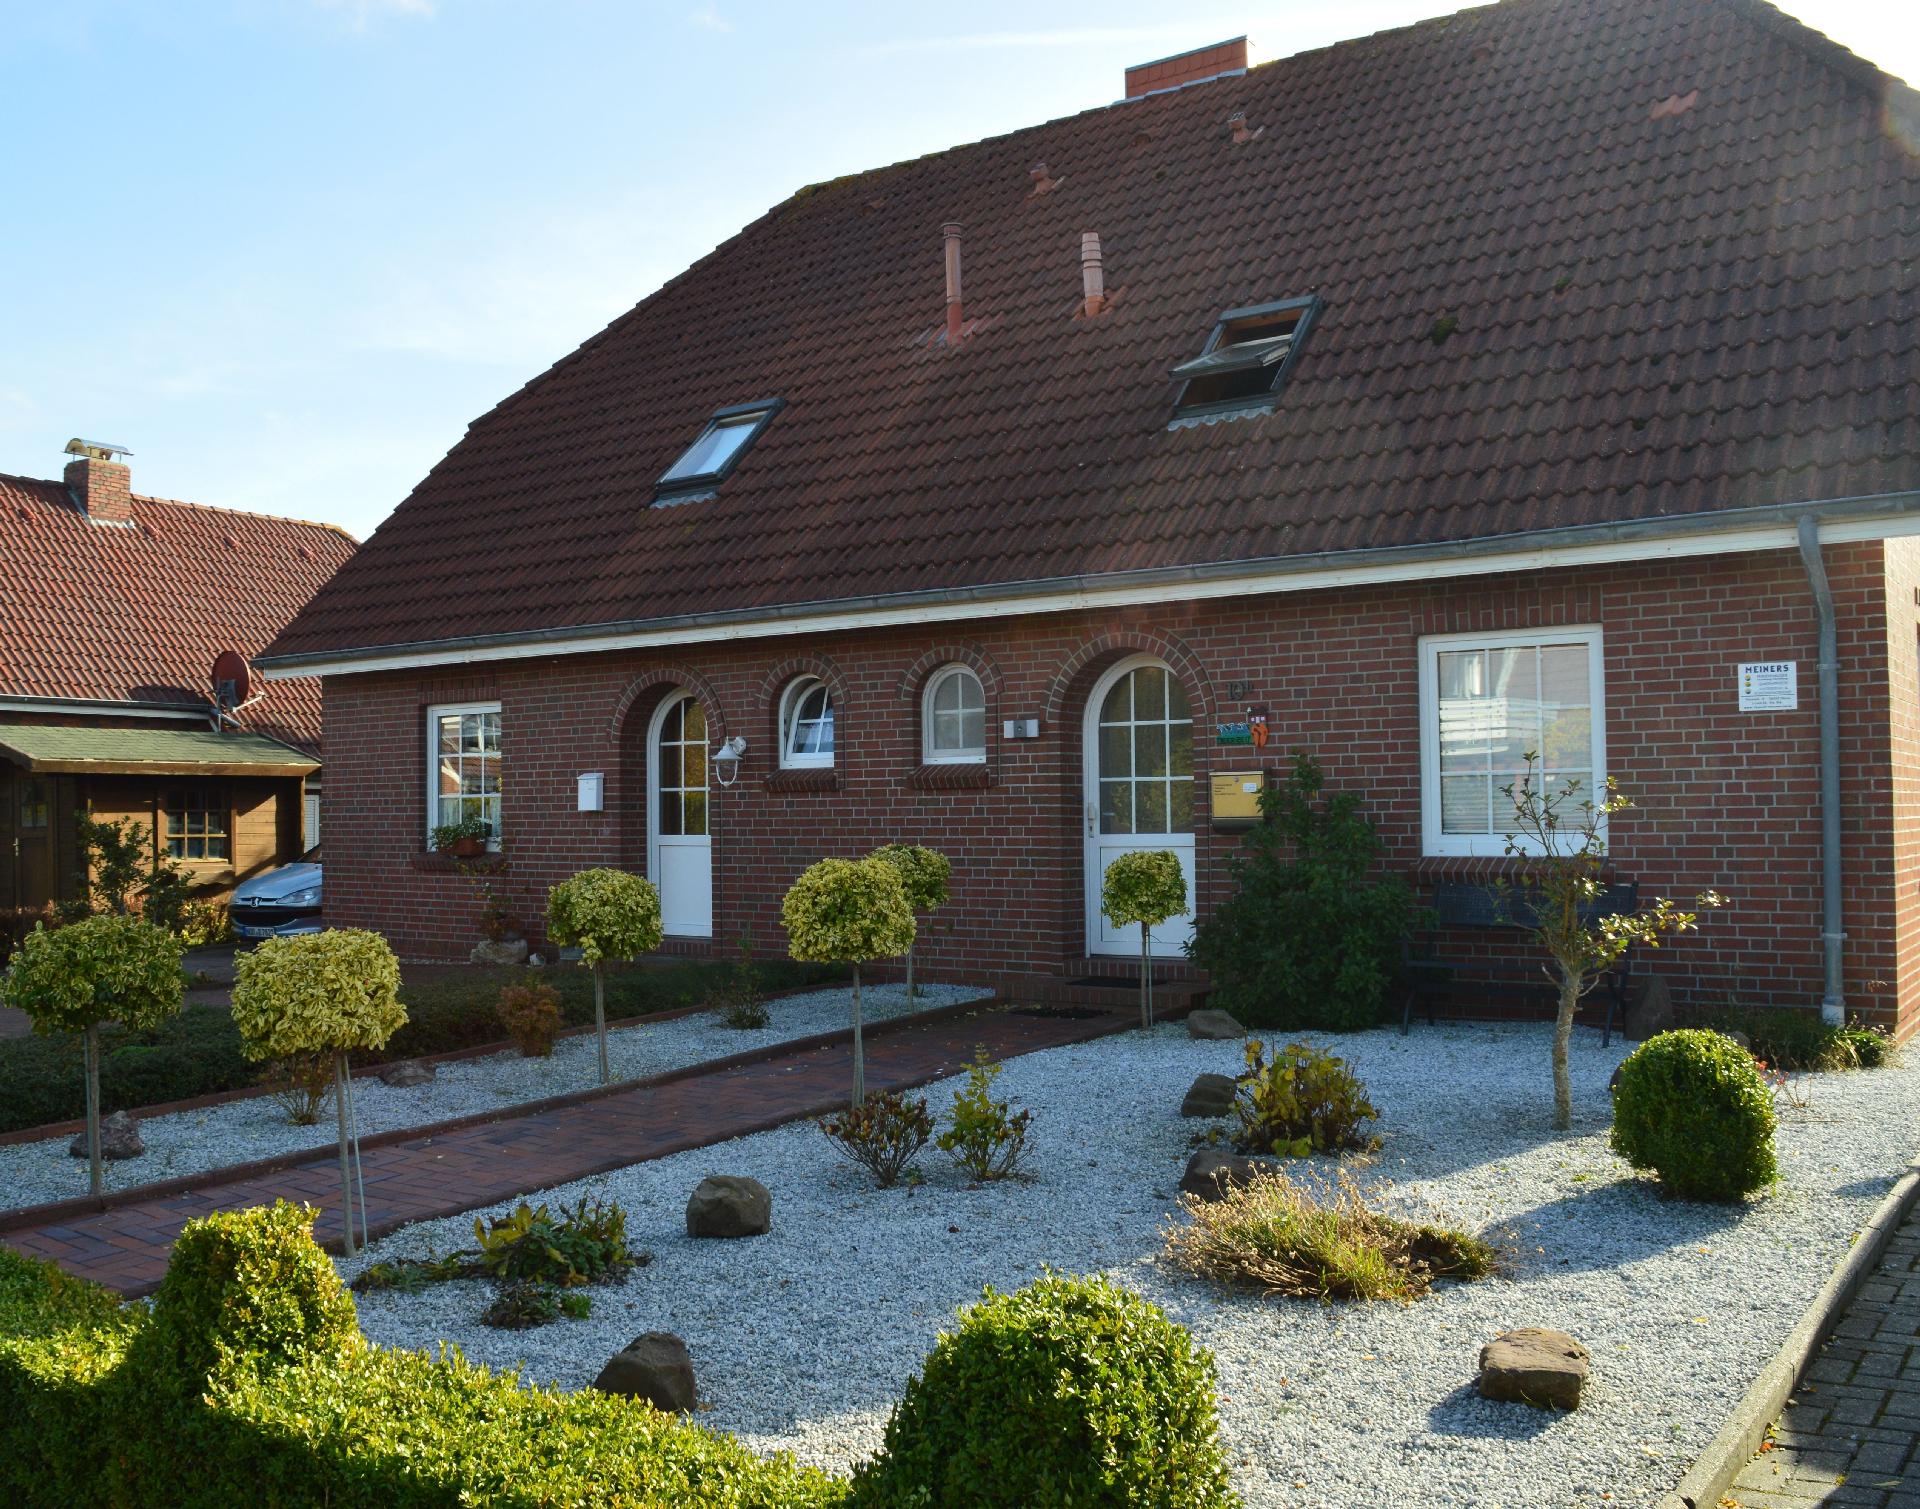  Ferienhaus mit Terrasse, Garten und Fahrradnutzun Ferienhaus in Niedersachsen